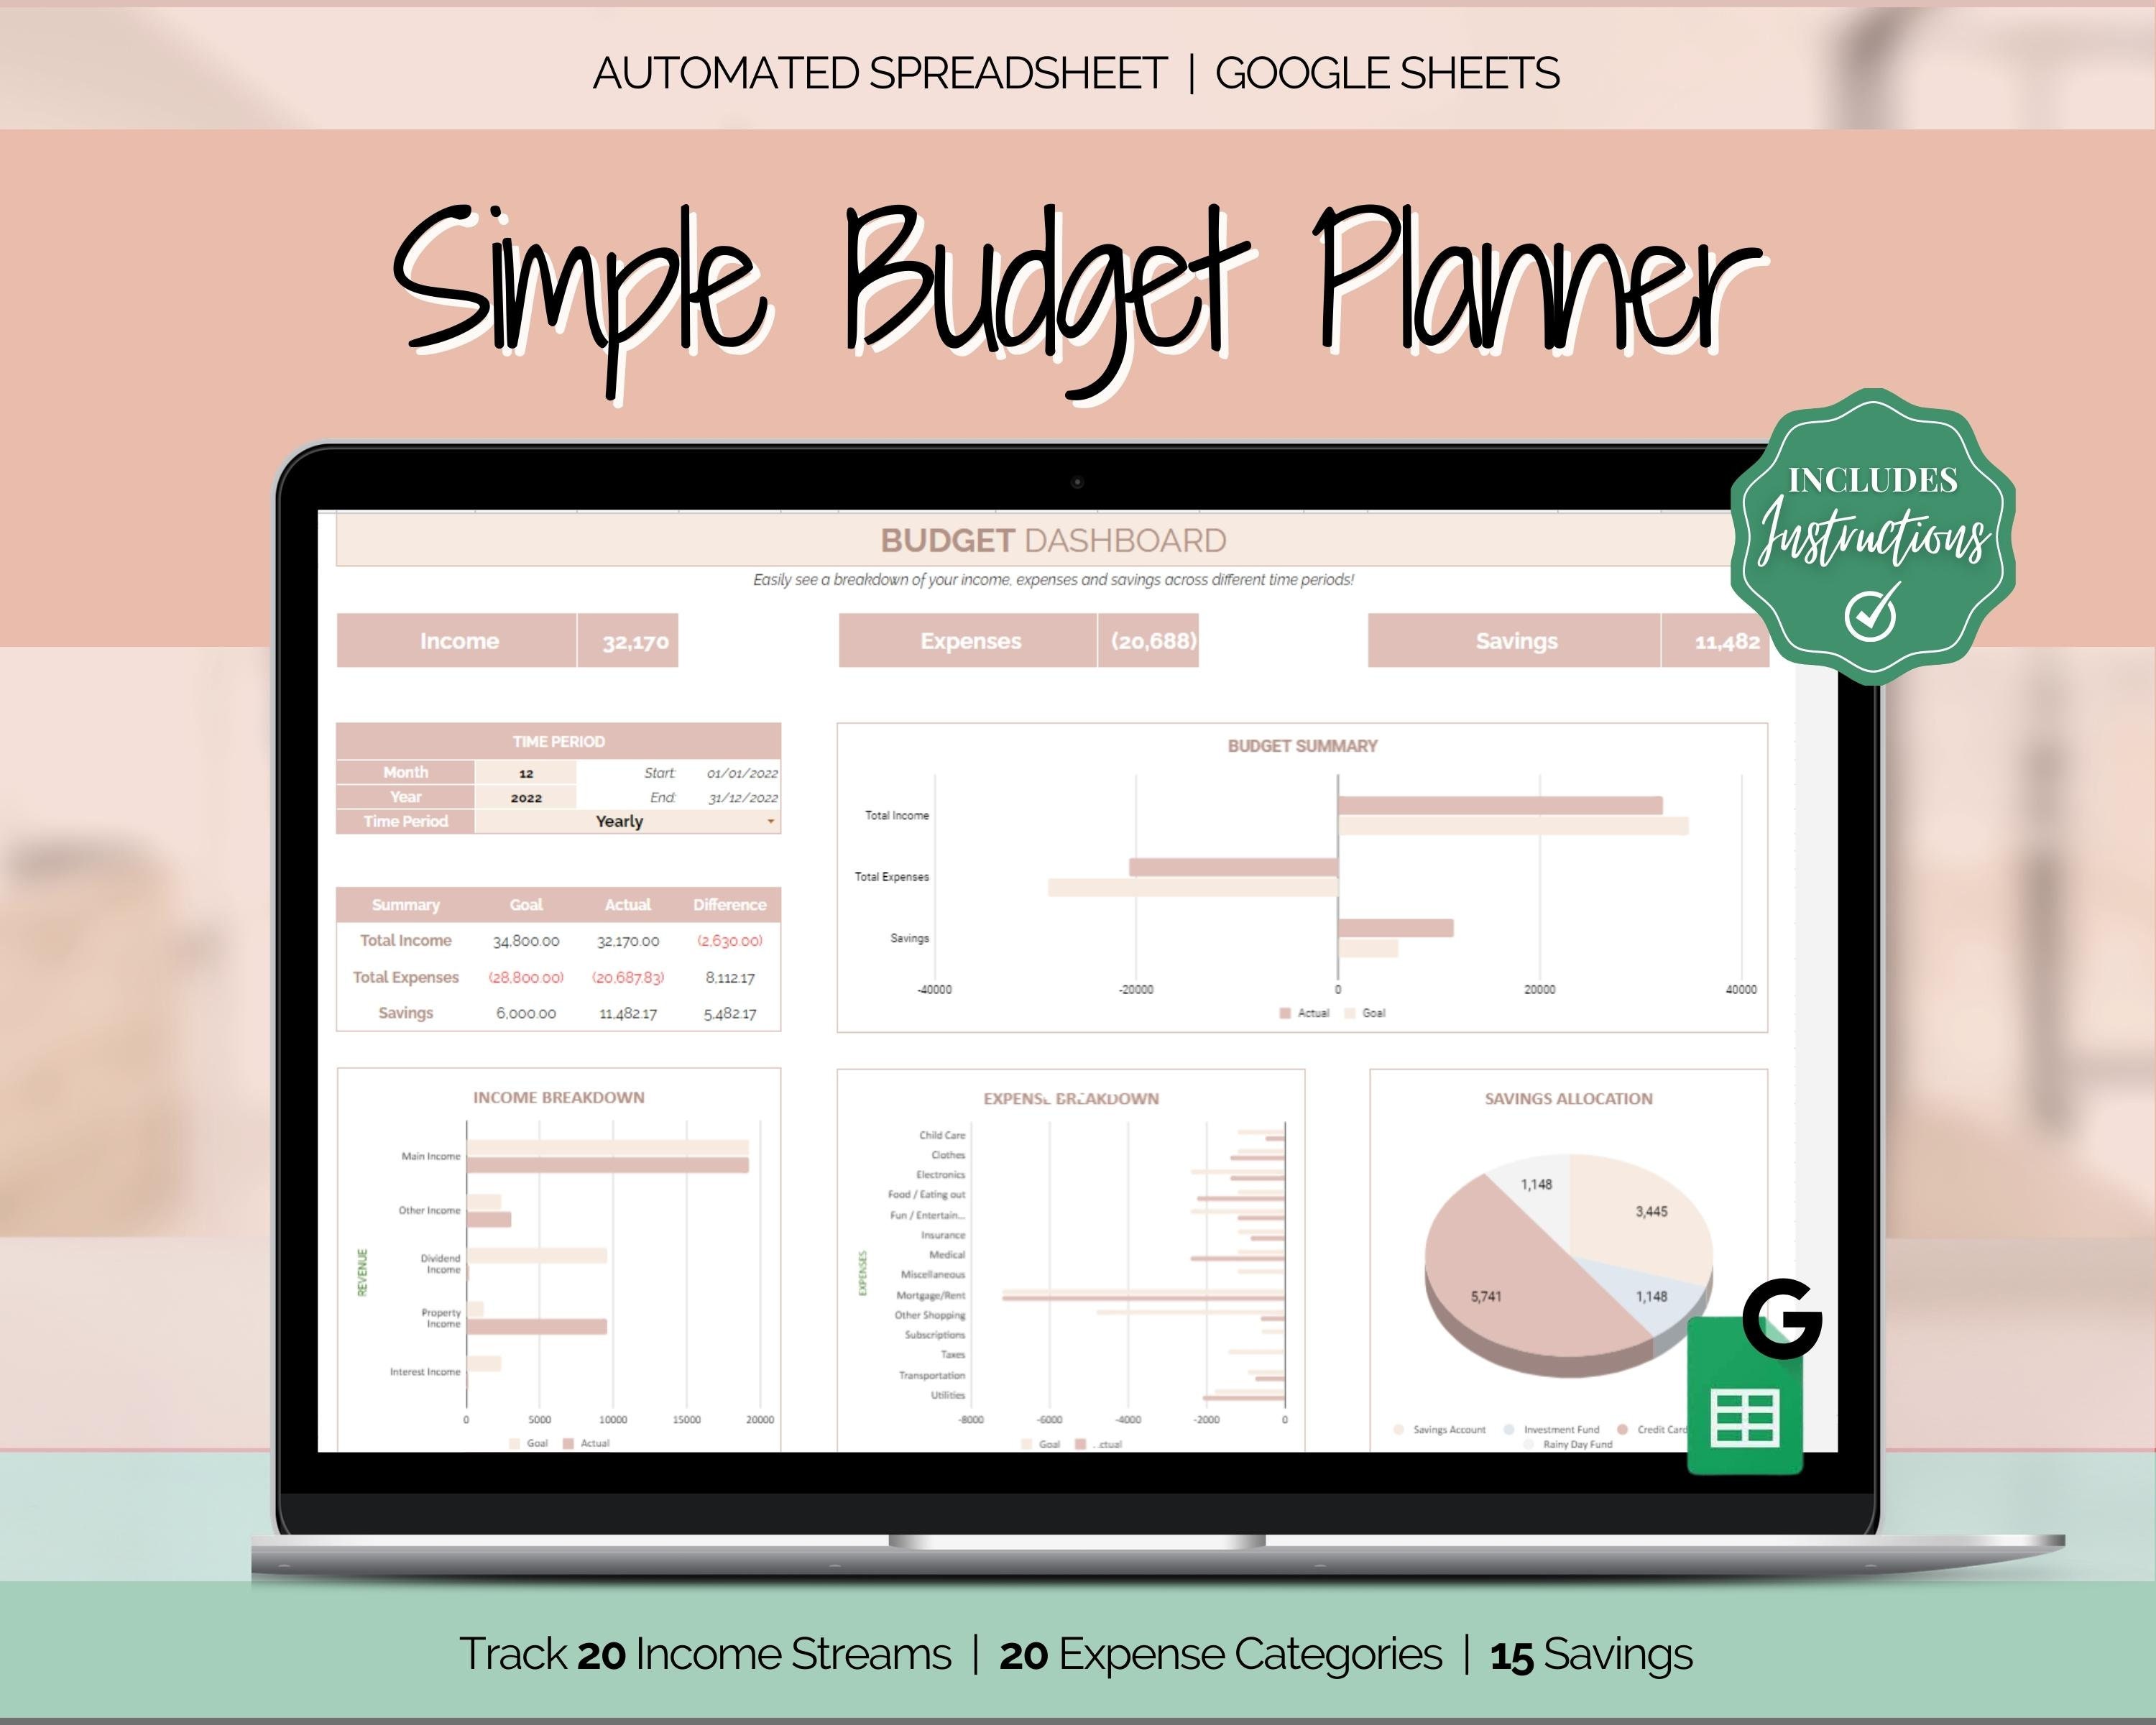 Life & Apples Planificateur budgétaire – Carnet de budget mensuel, journal  de suivi des dépenses, organisateur financier et livre de comptes – 12